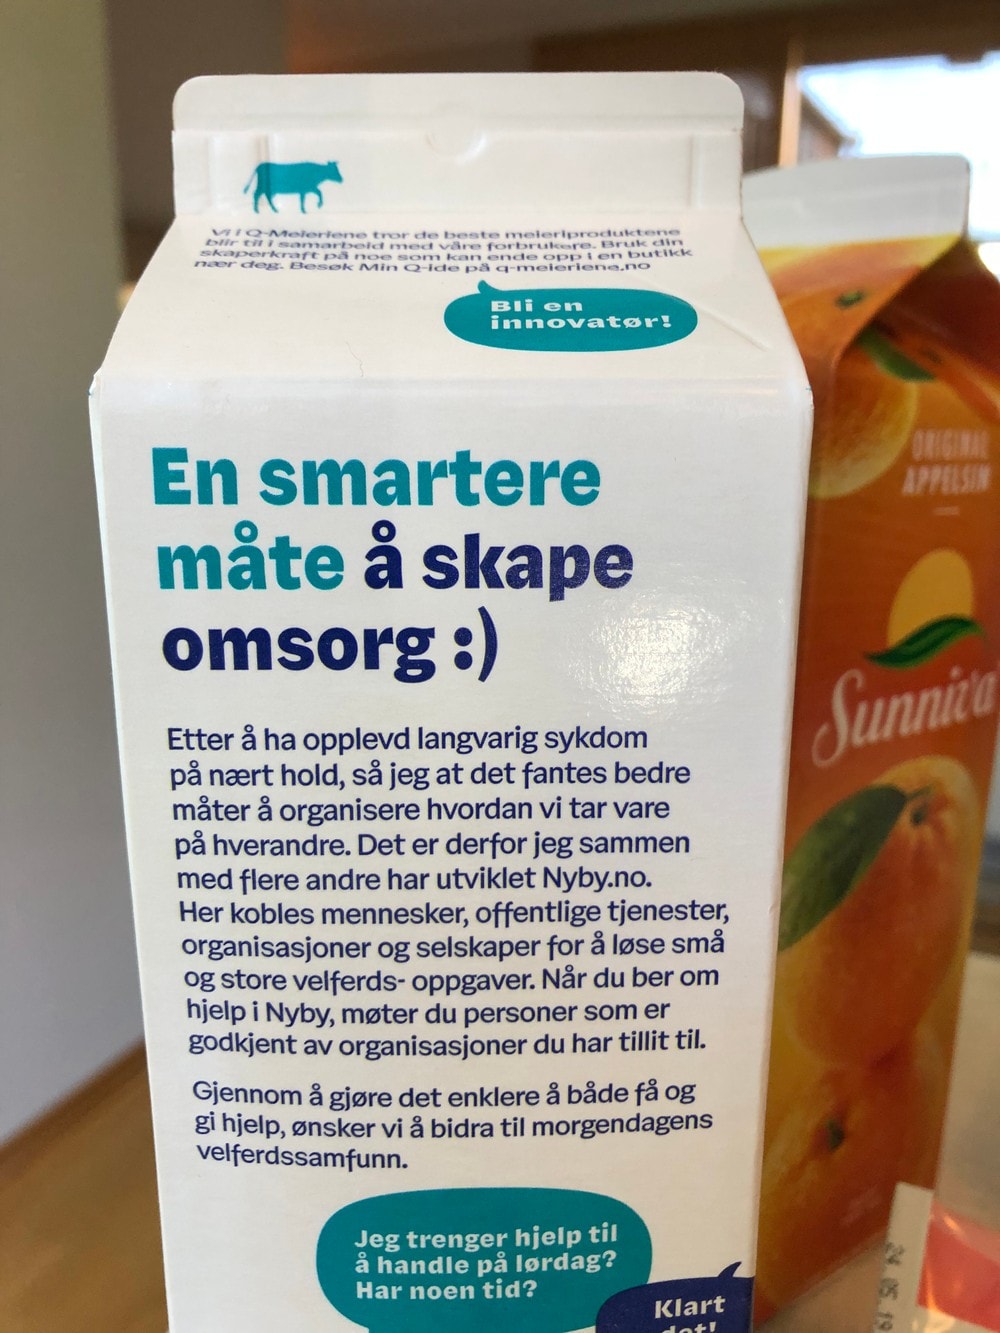 Ser du språkfeilen på melkekartongen?